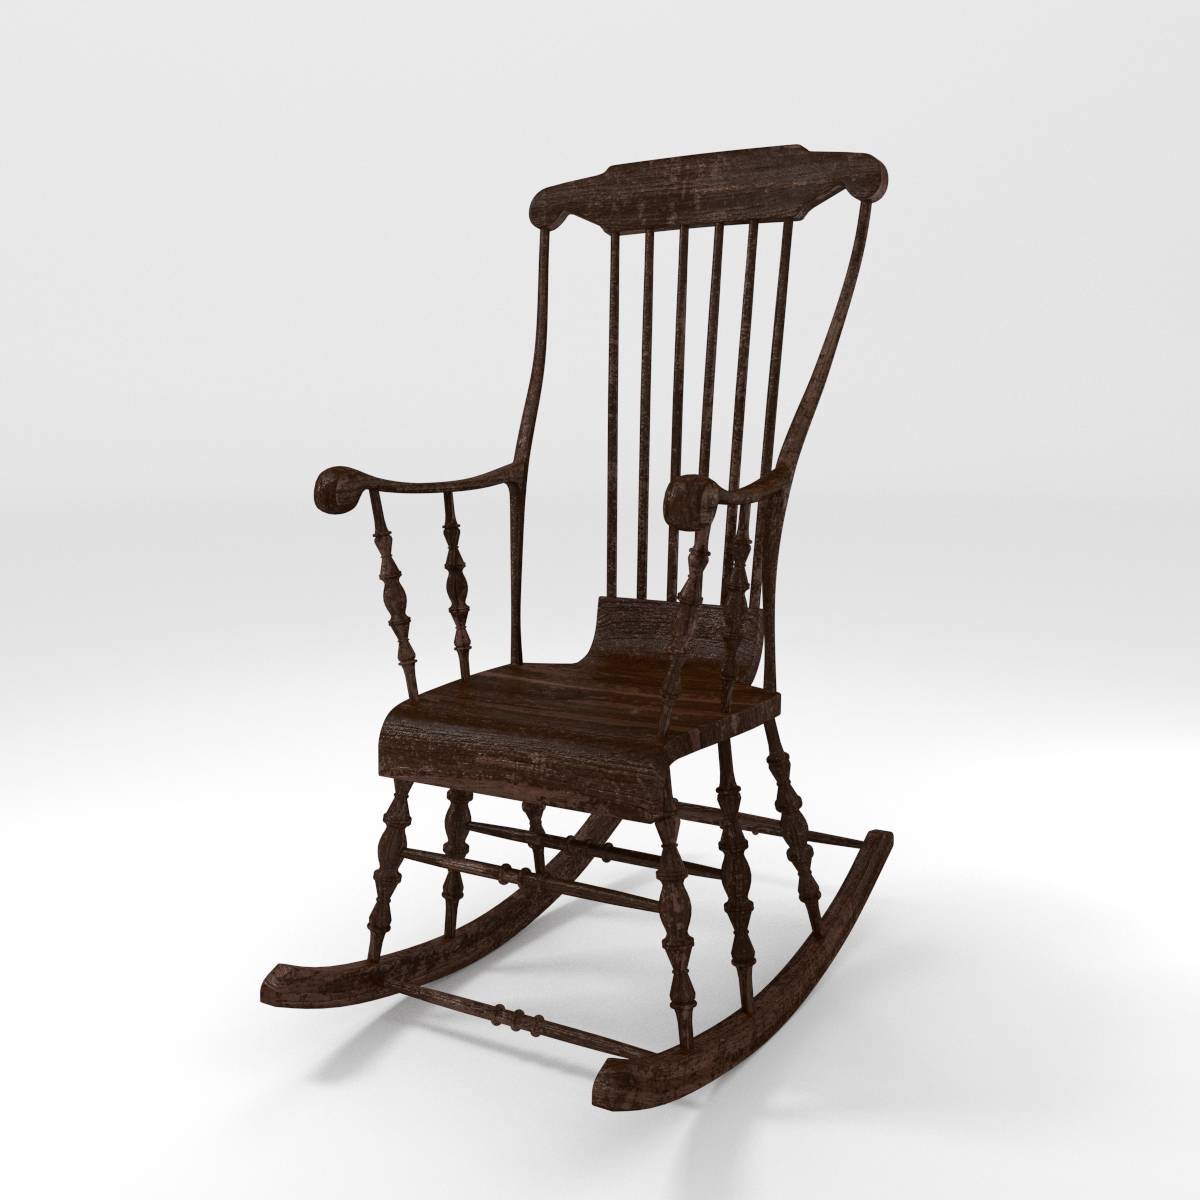 Old Wooden Rocking Chair 3d Model In Chair 3dexport